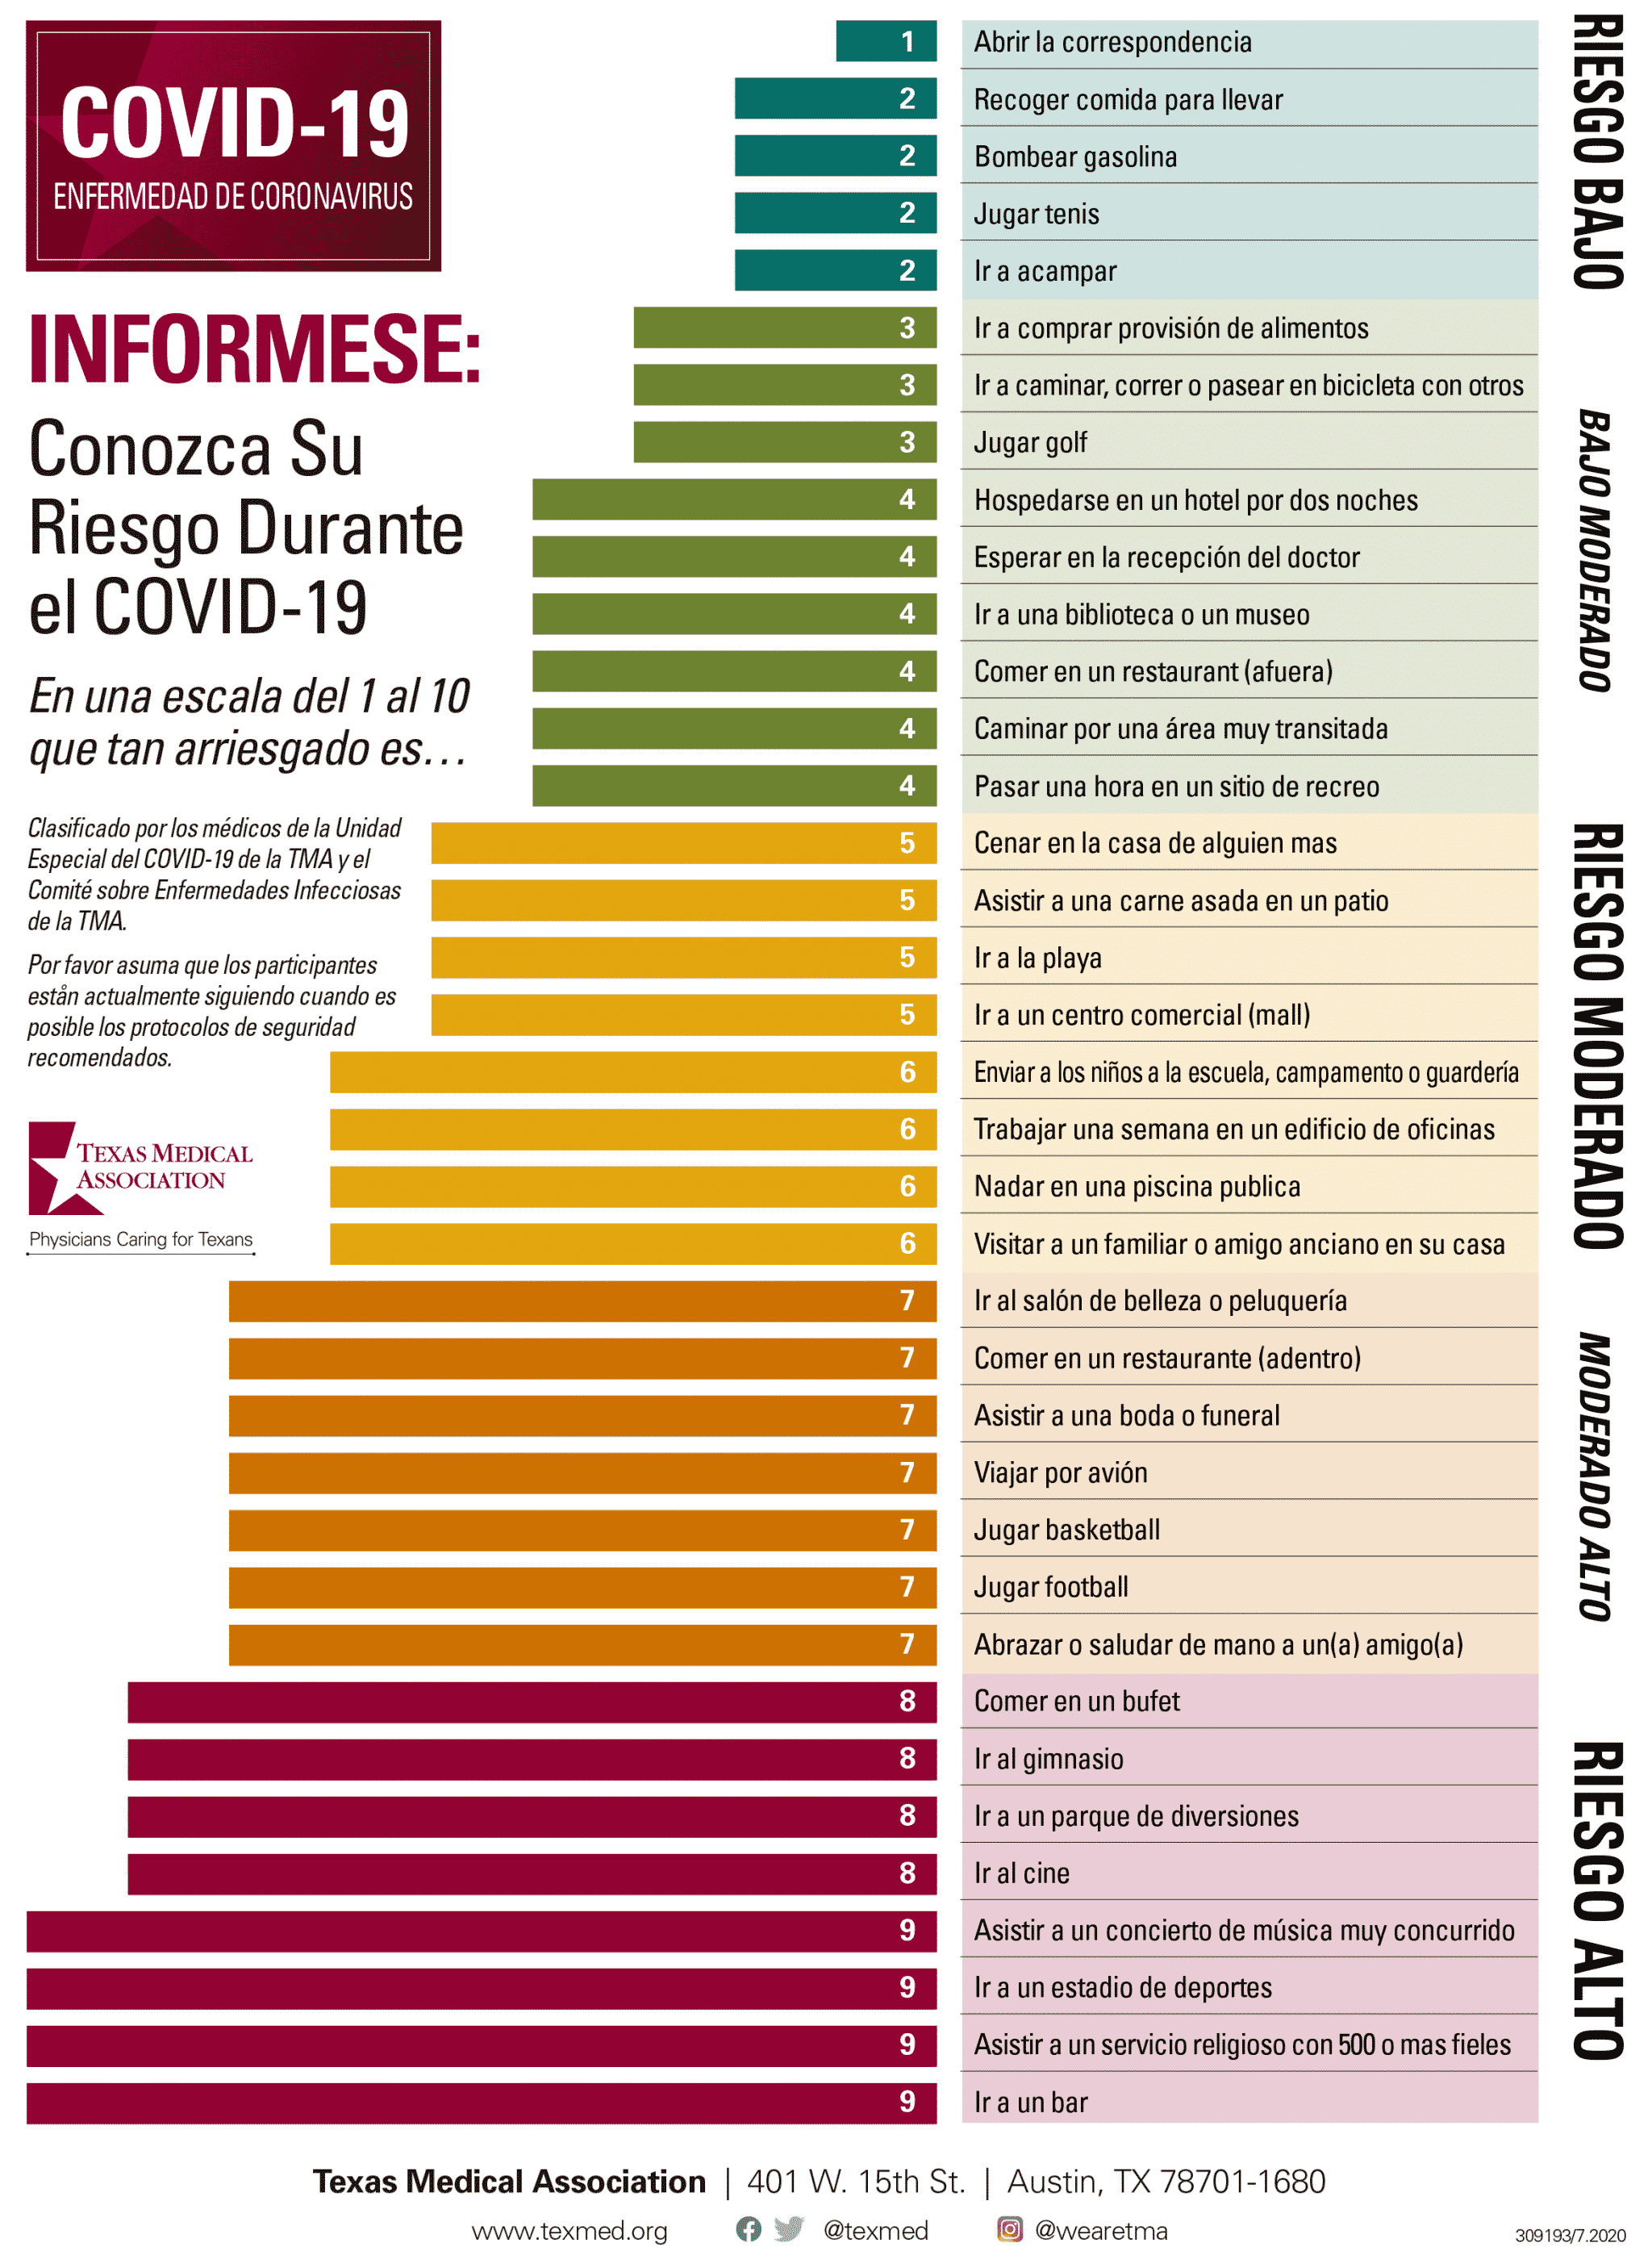 Ranking de atividades e riscos - COVID-19 em Espanhol